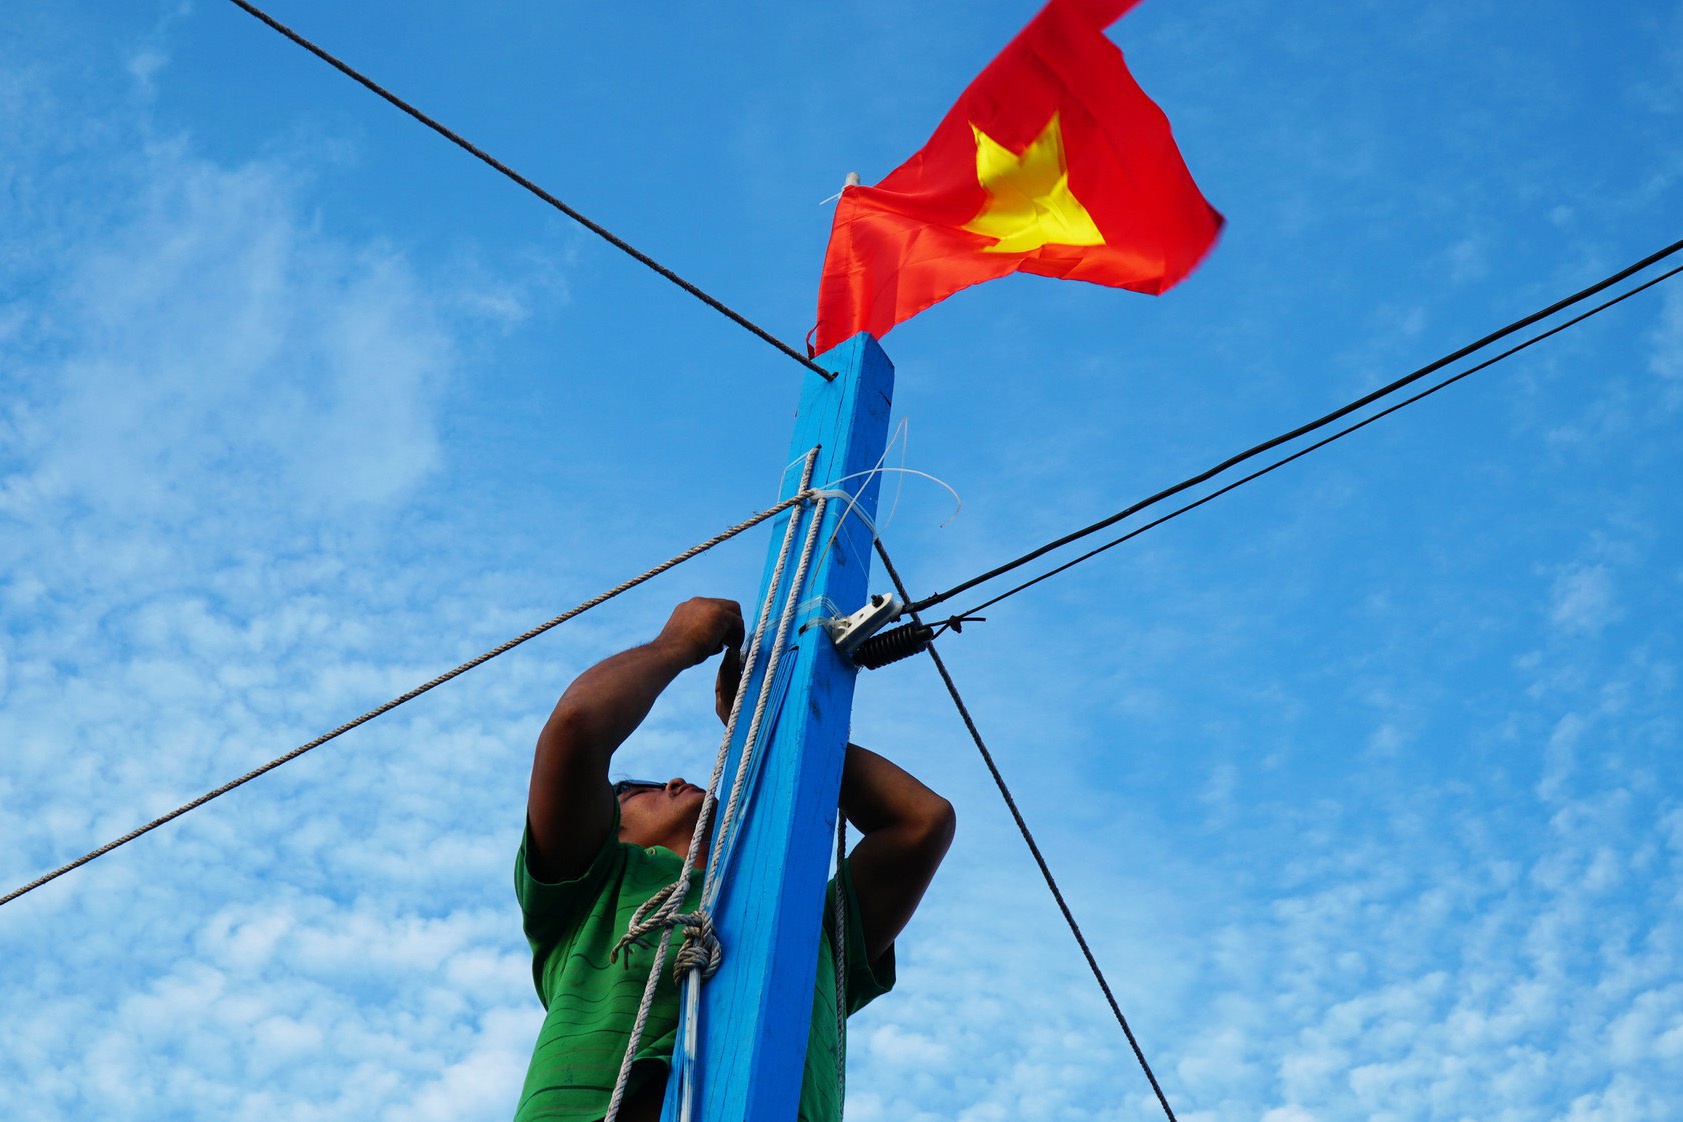 Quốc kỳ nước Việt Nam với ngũ sắc cờ vàng-đỏ được gắn liền với nền độc lập, tự do, hạnh phúc. Những bức hình và video khoe lá cờ đầy uy nghi trên bãi biển Việt Nam sẽ khiến cho bạn phấn khích và vô cùng tự hào là người Việt. Bạn hãy cùng tham gia khám phá và trải nghiệm những giá trị tuyệt vời mà Quốc kỳ đem lại.